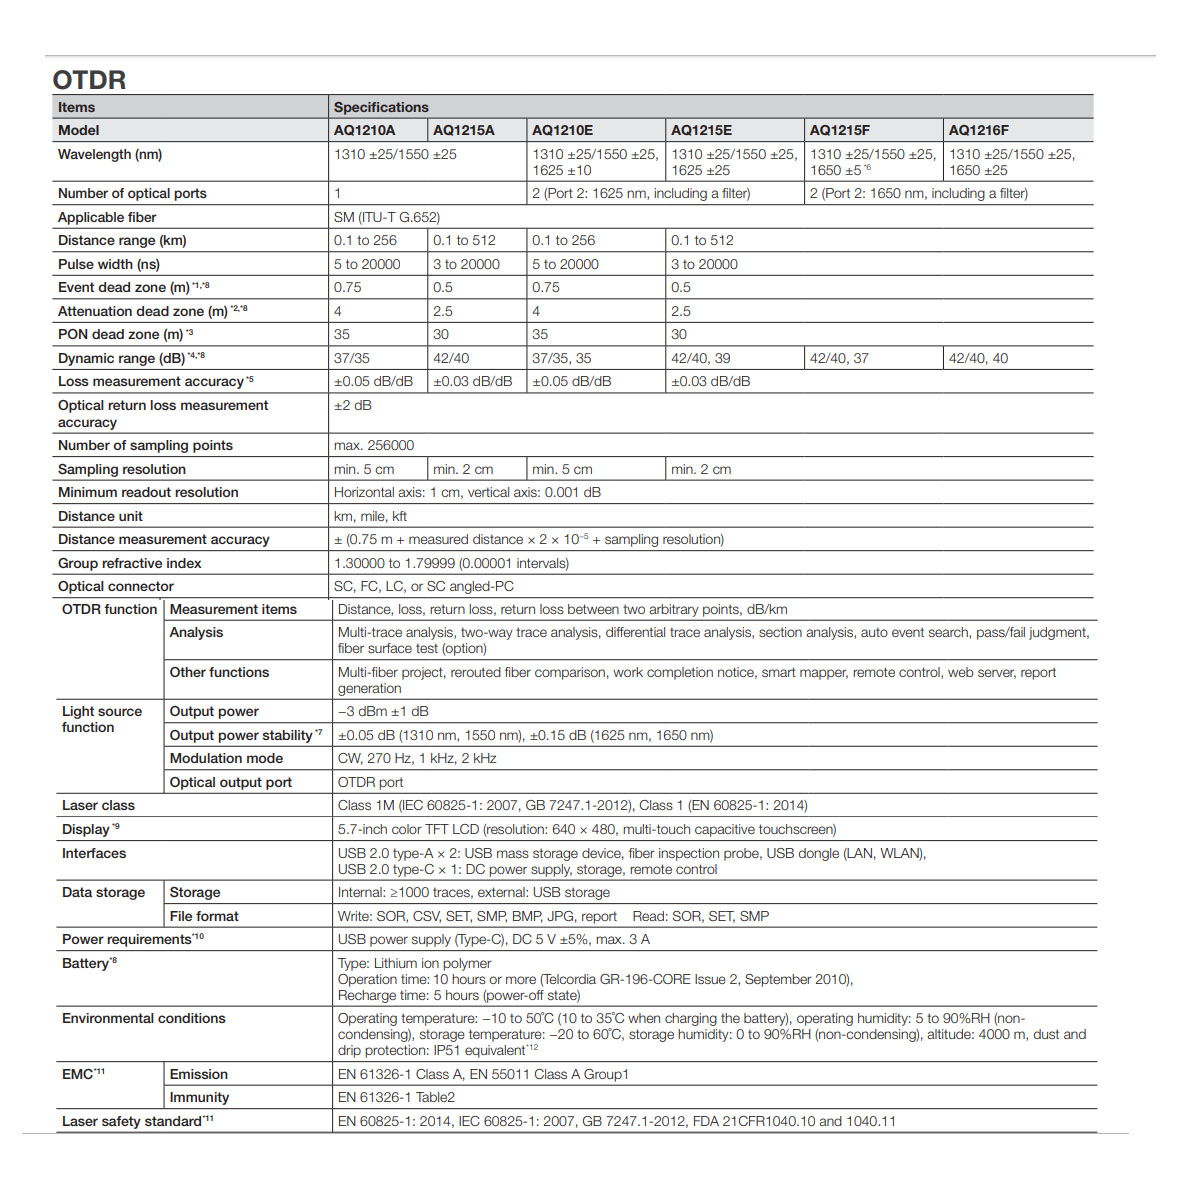 Yokogawa AQ1210 OTDR Specifications